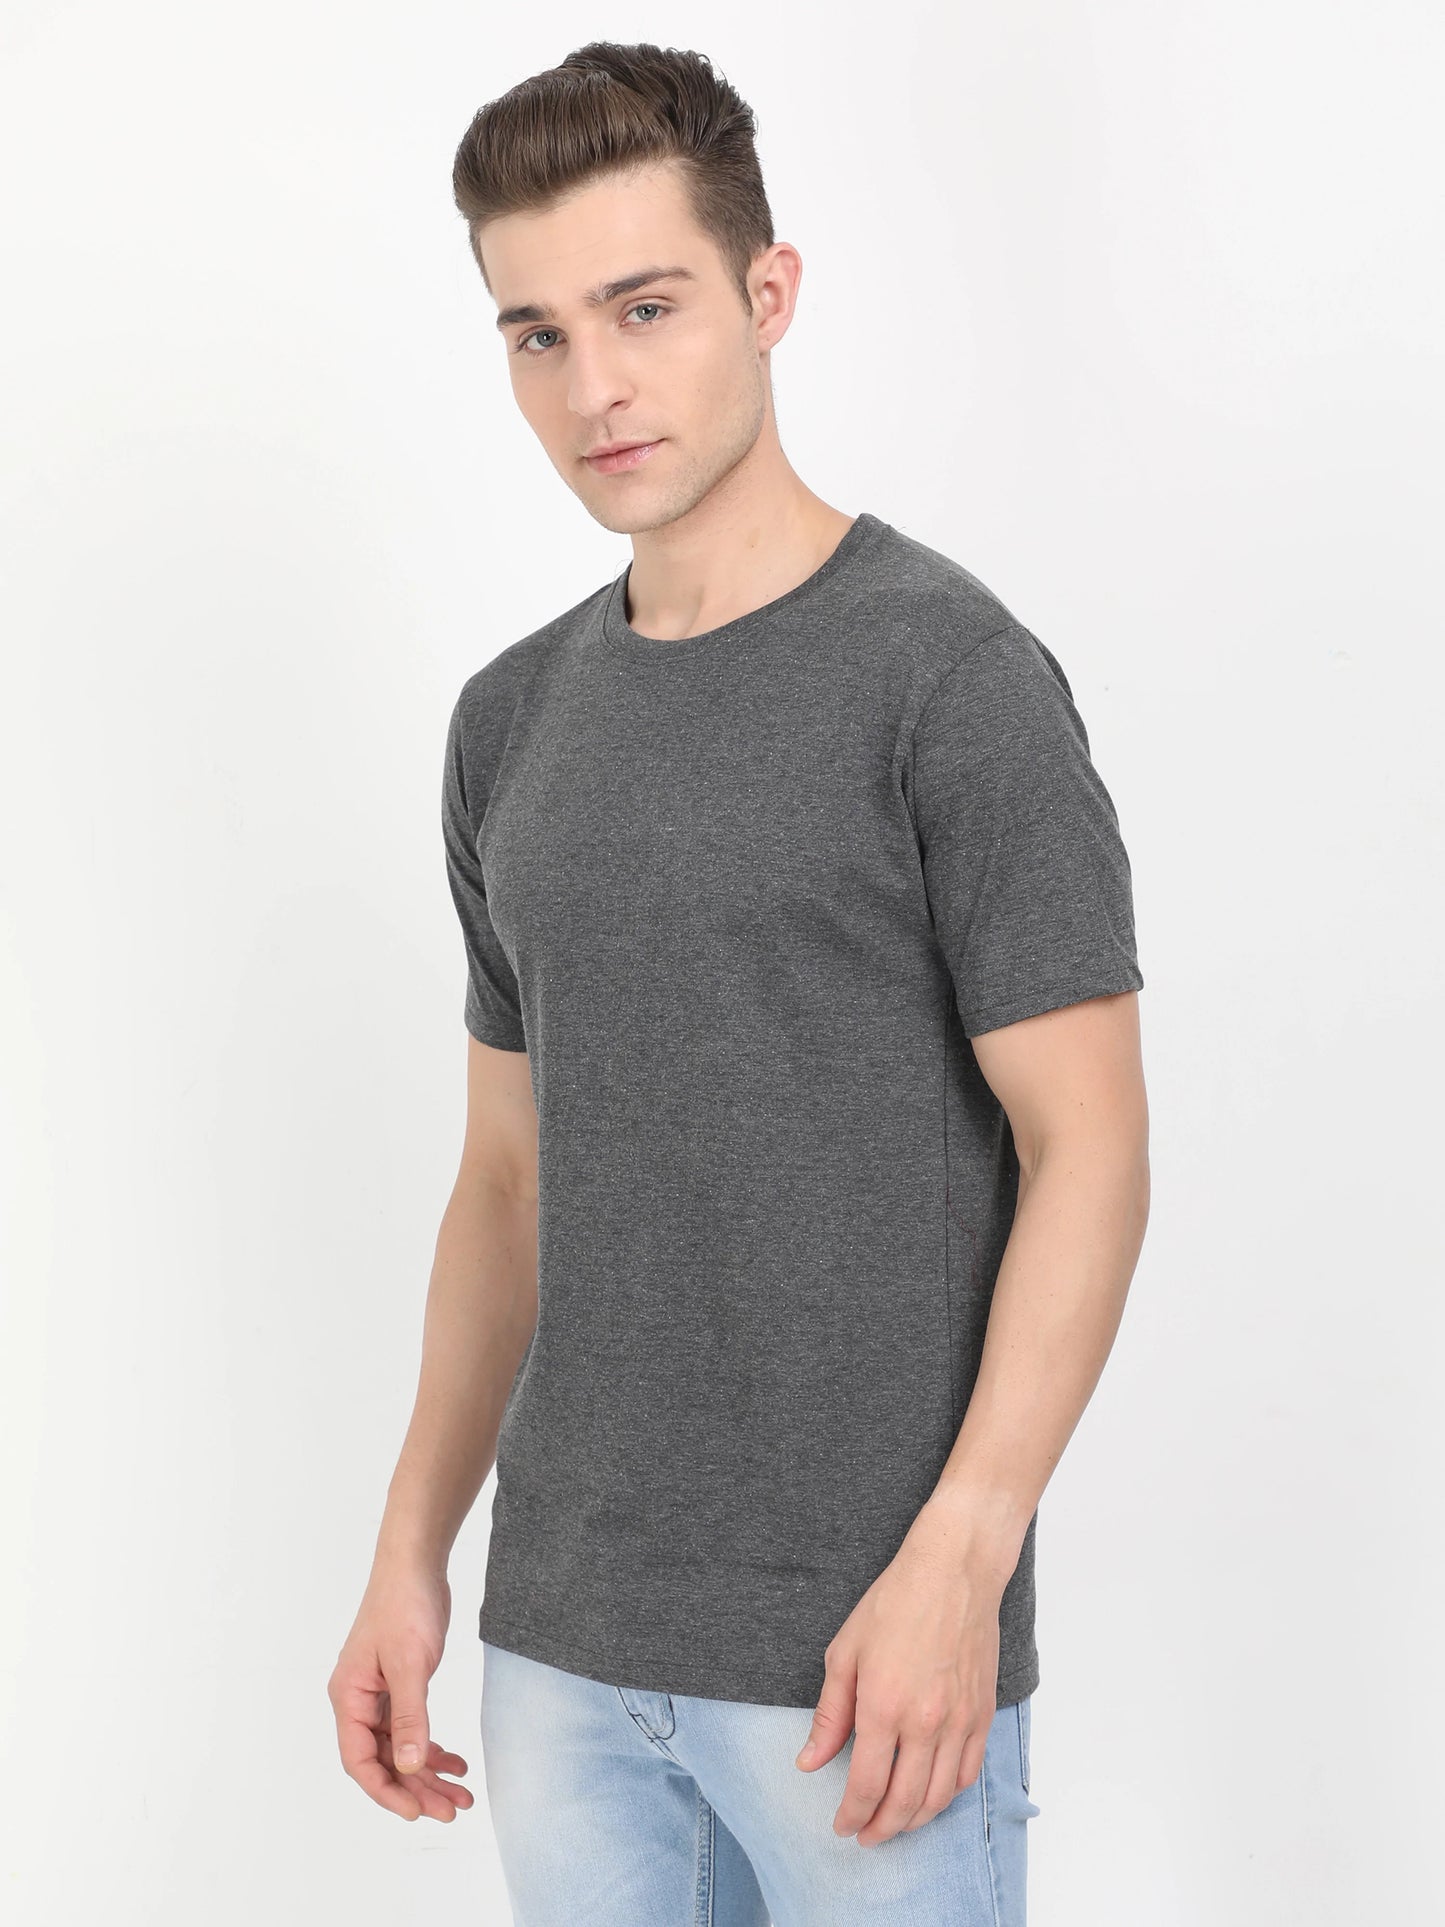 Men's Cotton Plain Round Neck Half Sleeve Charcoal Melange Color T-Shirt